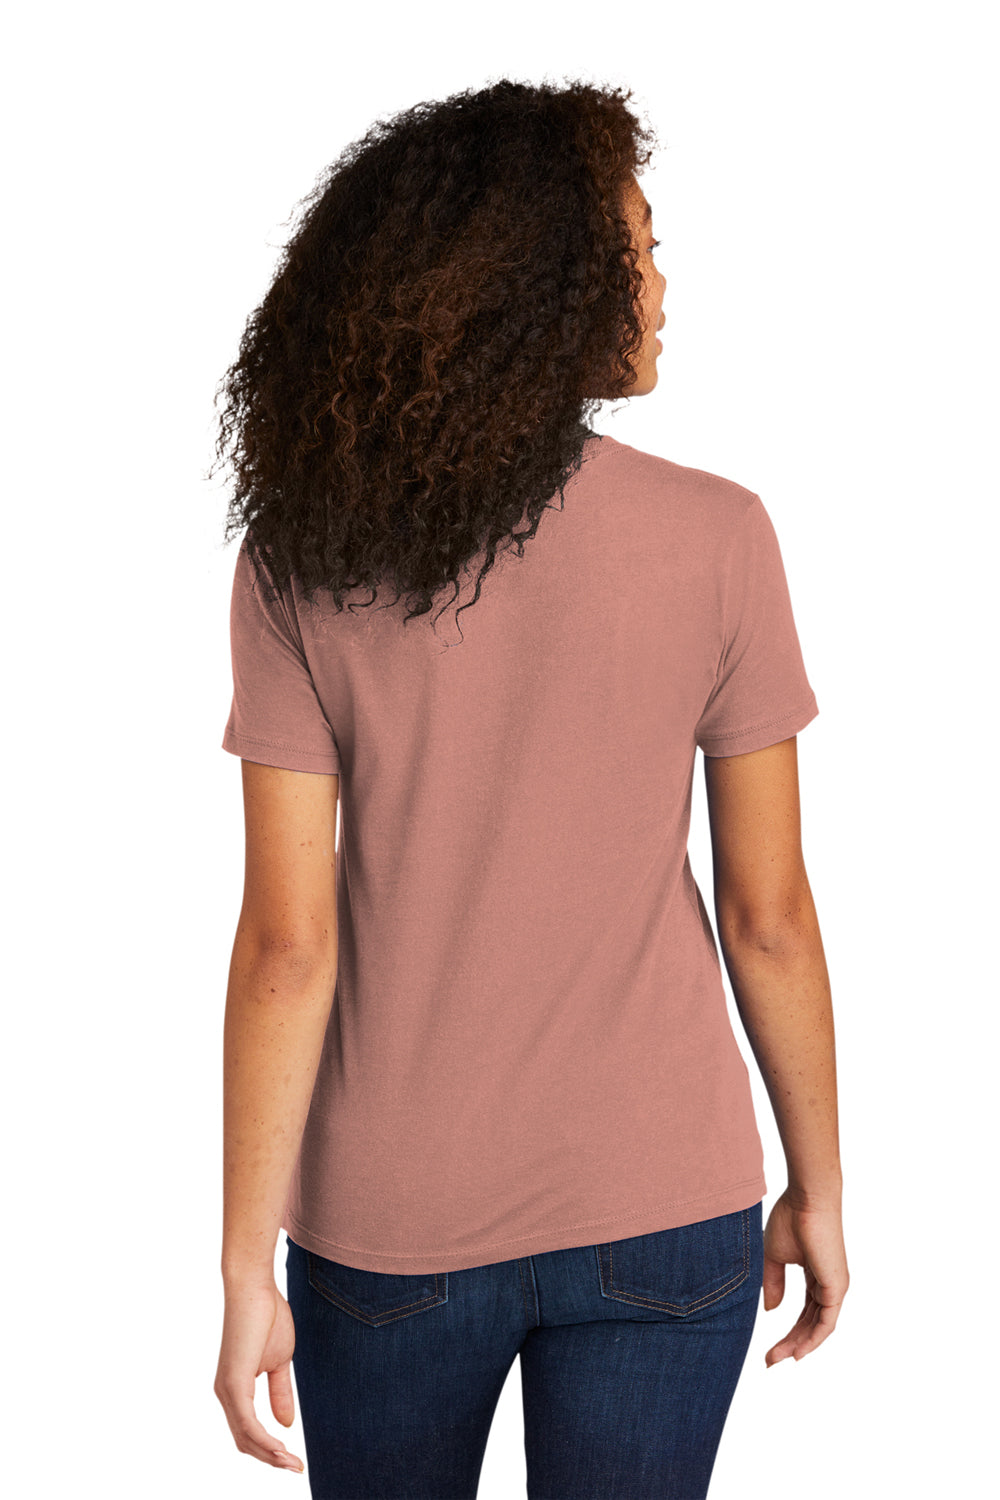 Next Level NL3900/N3900/3900 Womens Boyfriend Fine Jersey Short Sleeve Crewneck T-Shirt Desert Pink Back